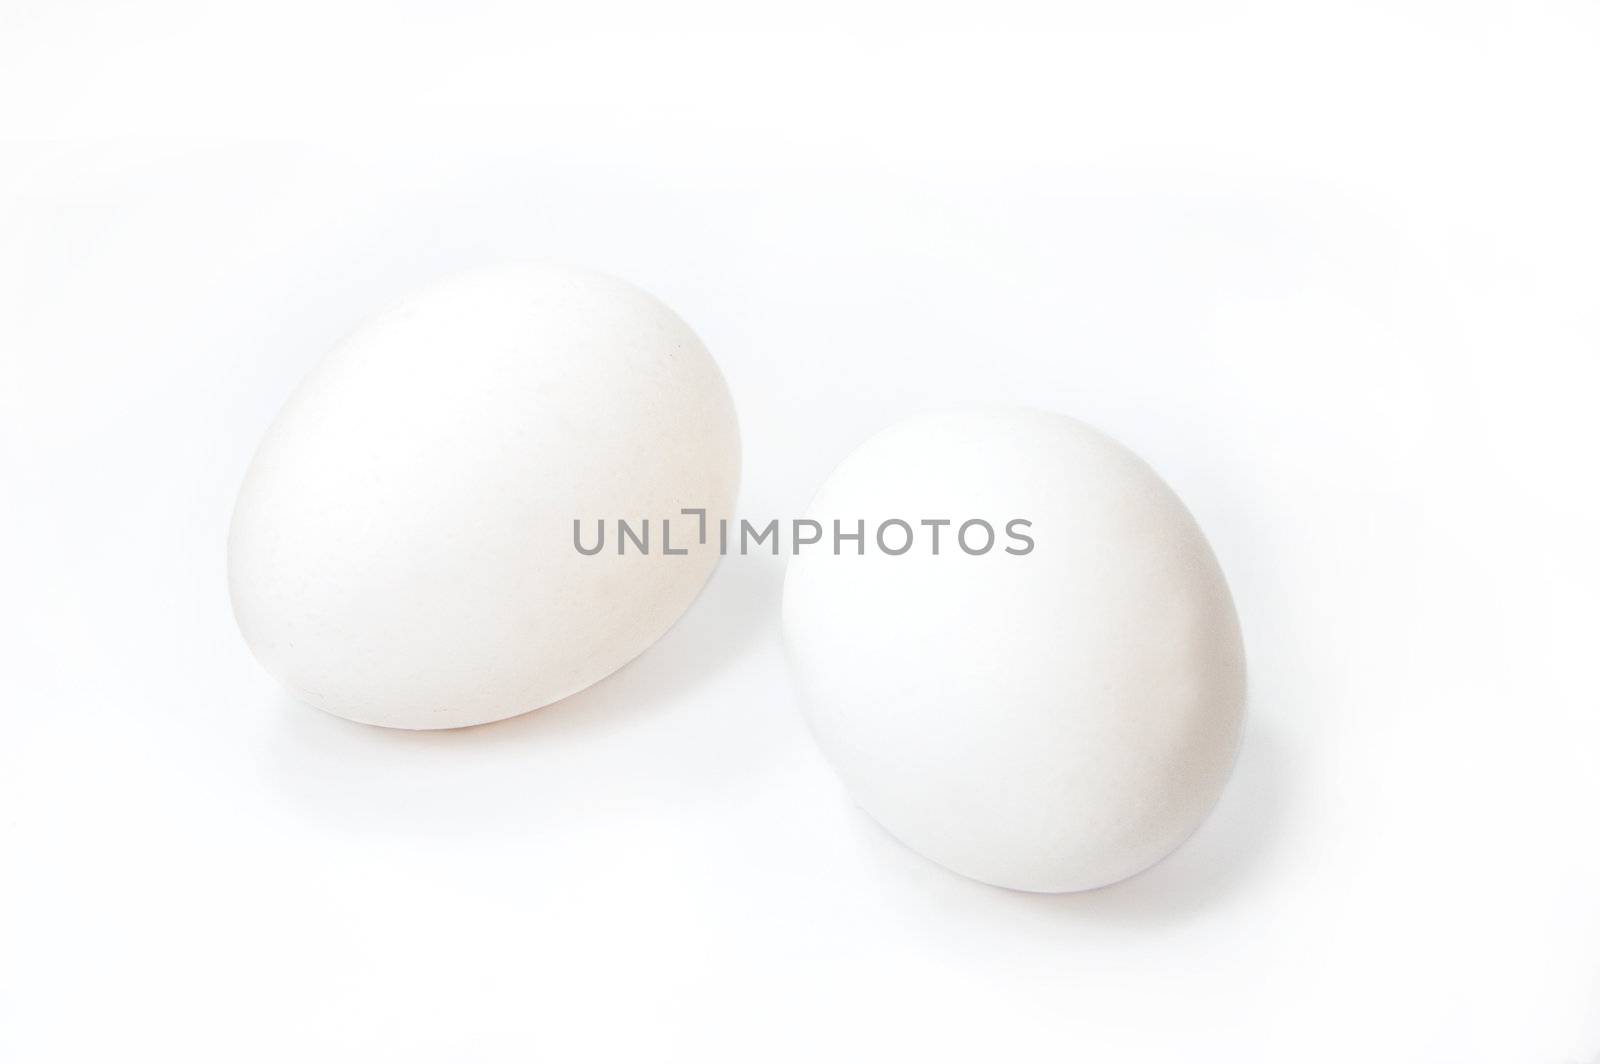 Two white eggs on white